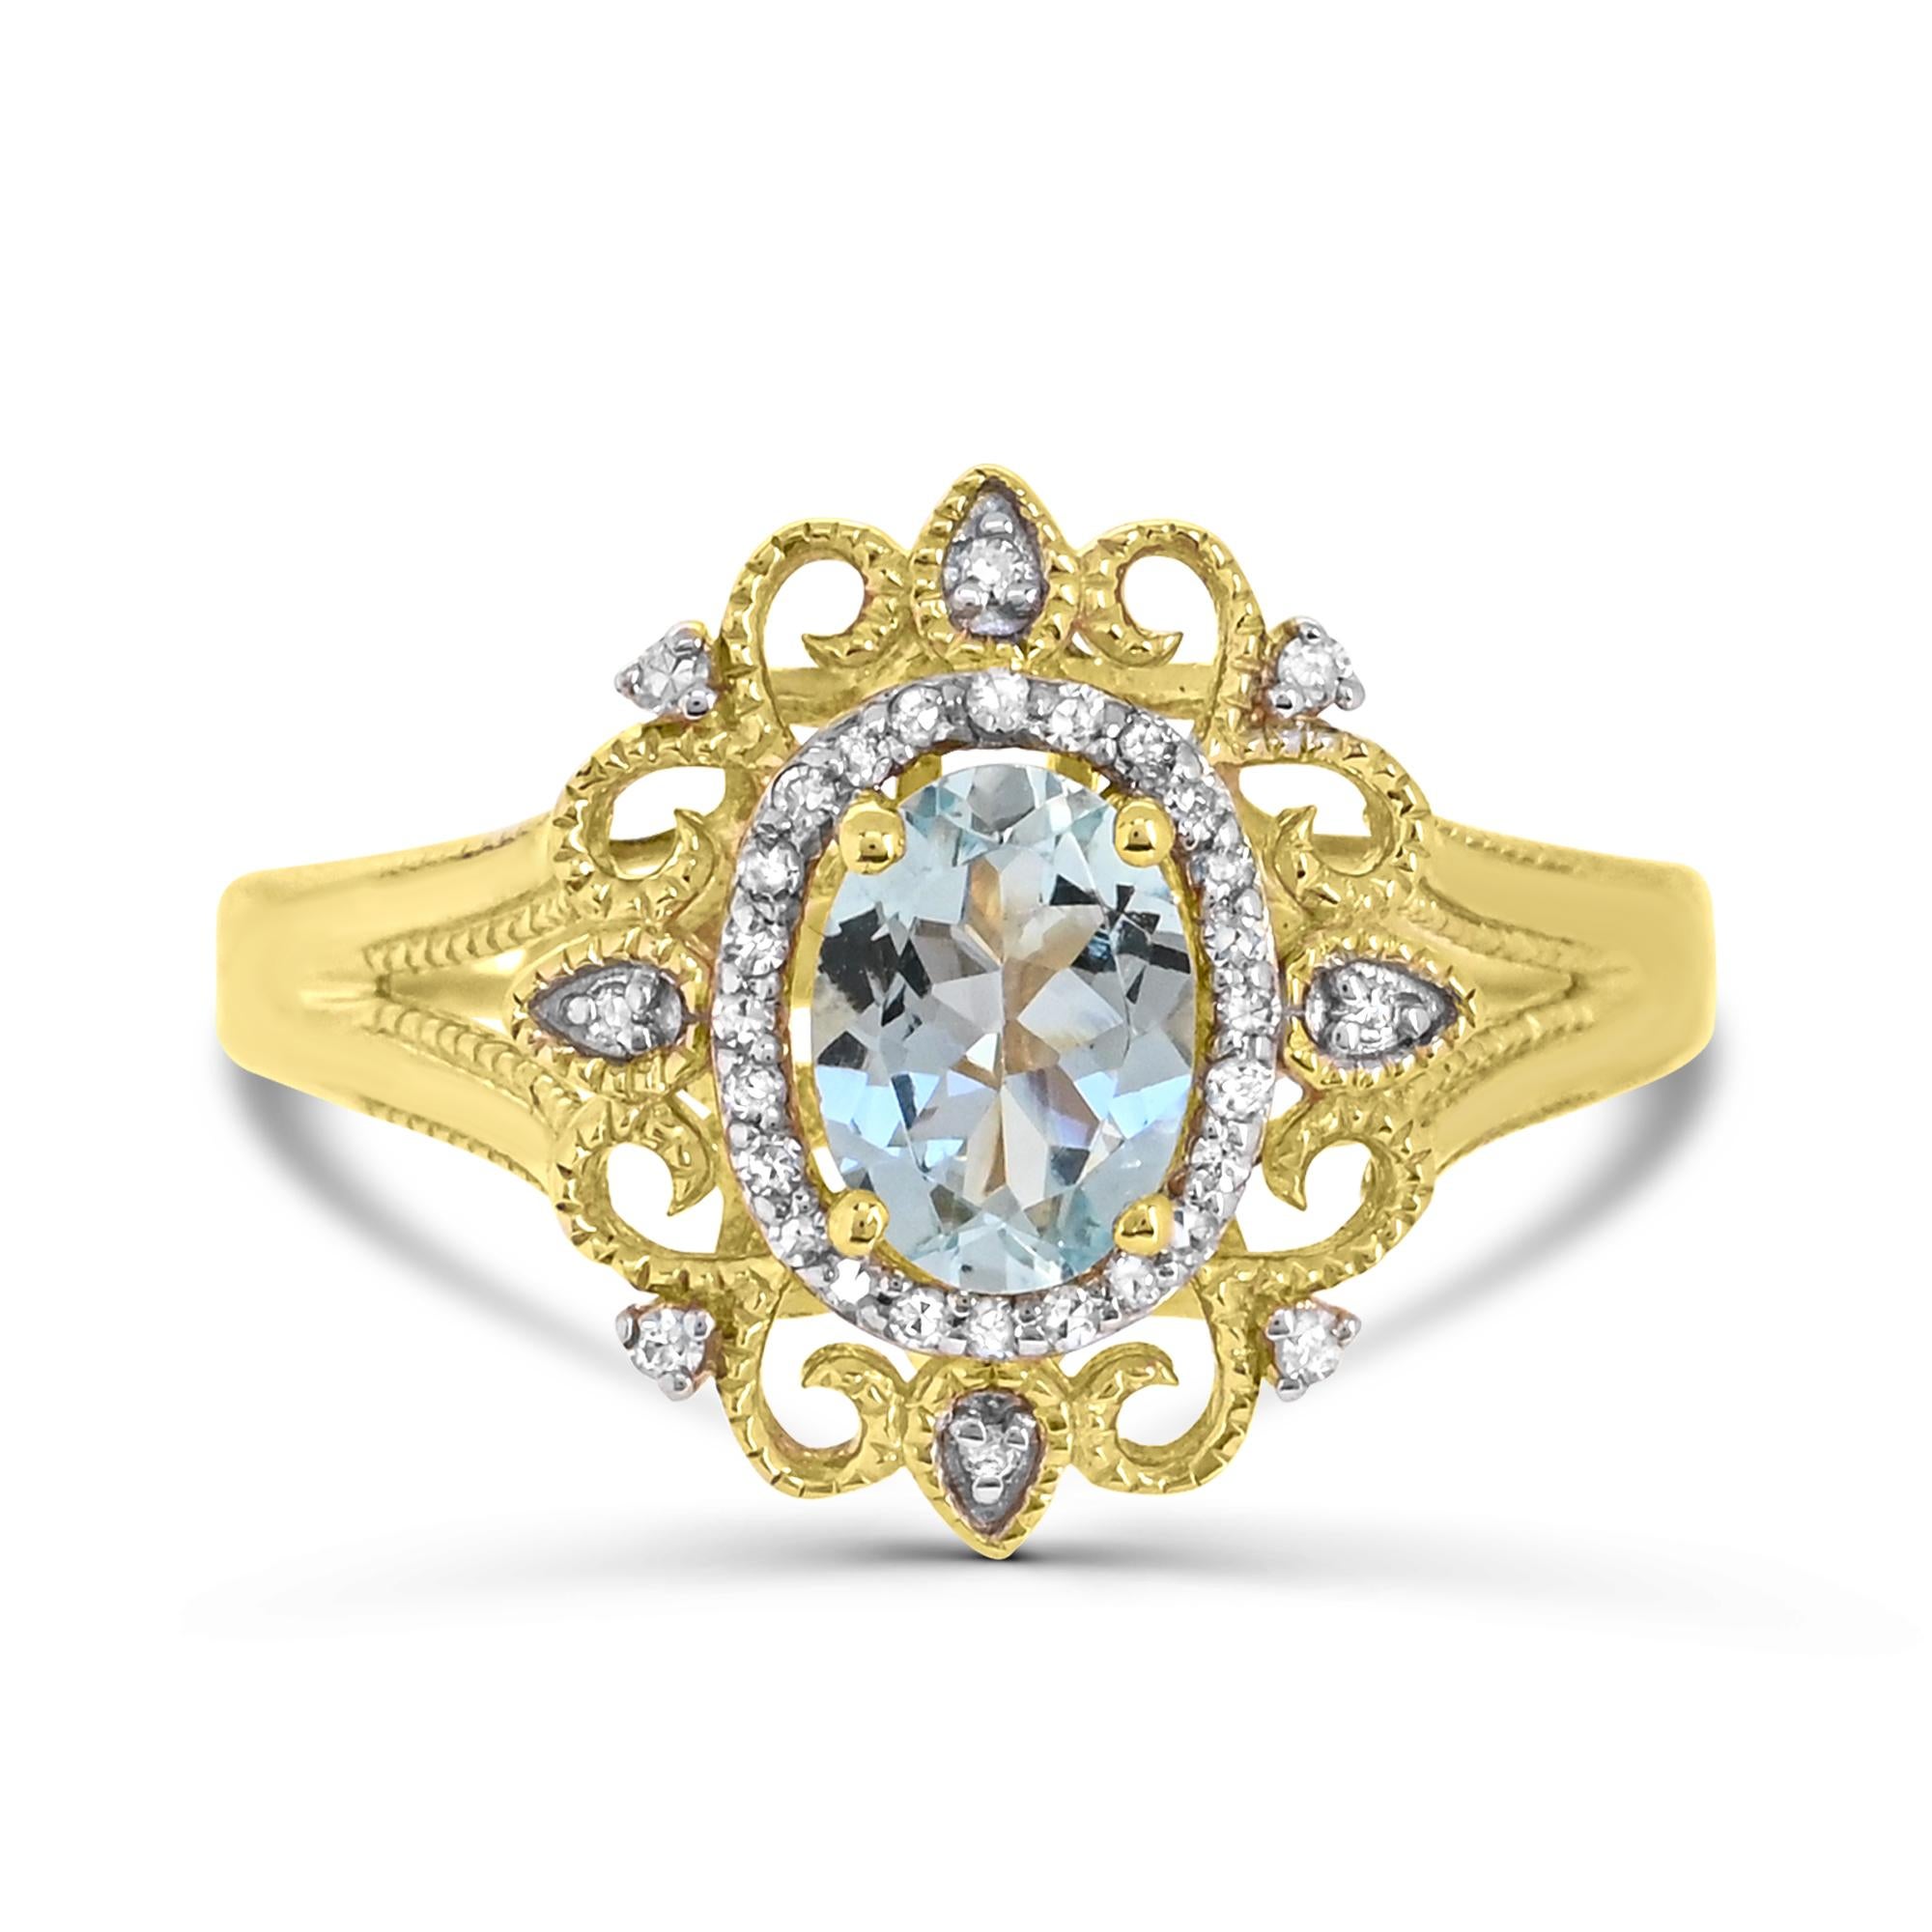 Lassen Sie sich von der Eleganz unseres Rings mit Aquamarin und weißem Diamanten in 14-karätigem Gelbgold bezaubern. Dieser mit viel Liebe zum Detail gefertigte Ring besticht durch eine atemberaubende Kombination aus ovalen Aquamarinen, die von